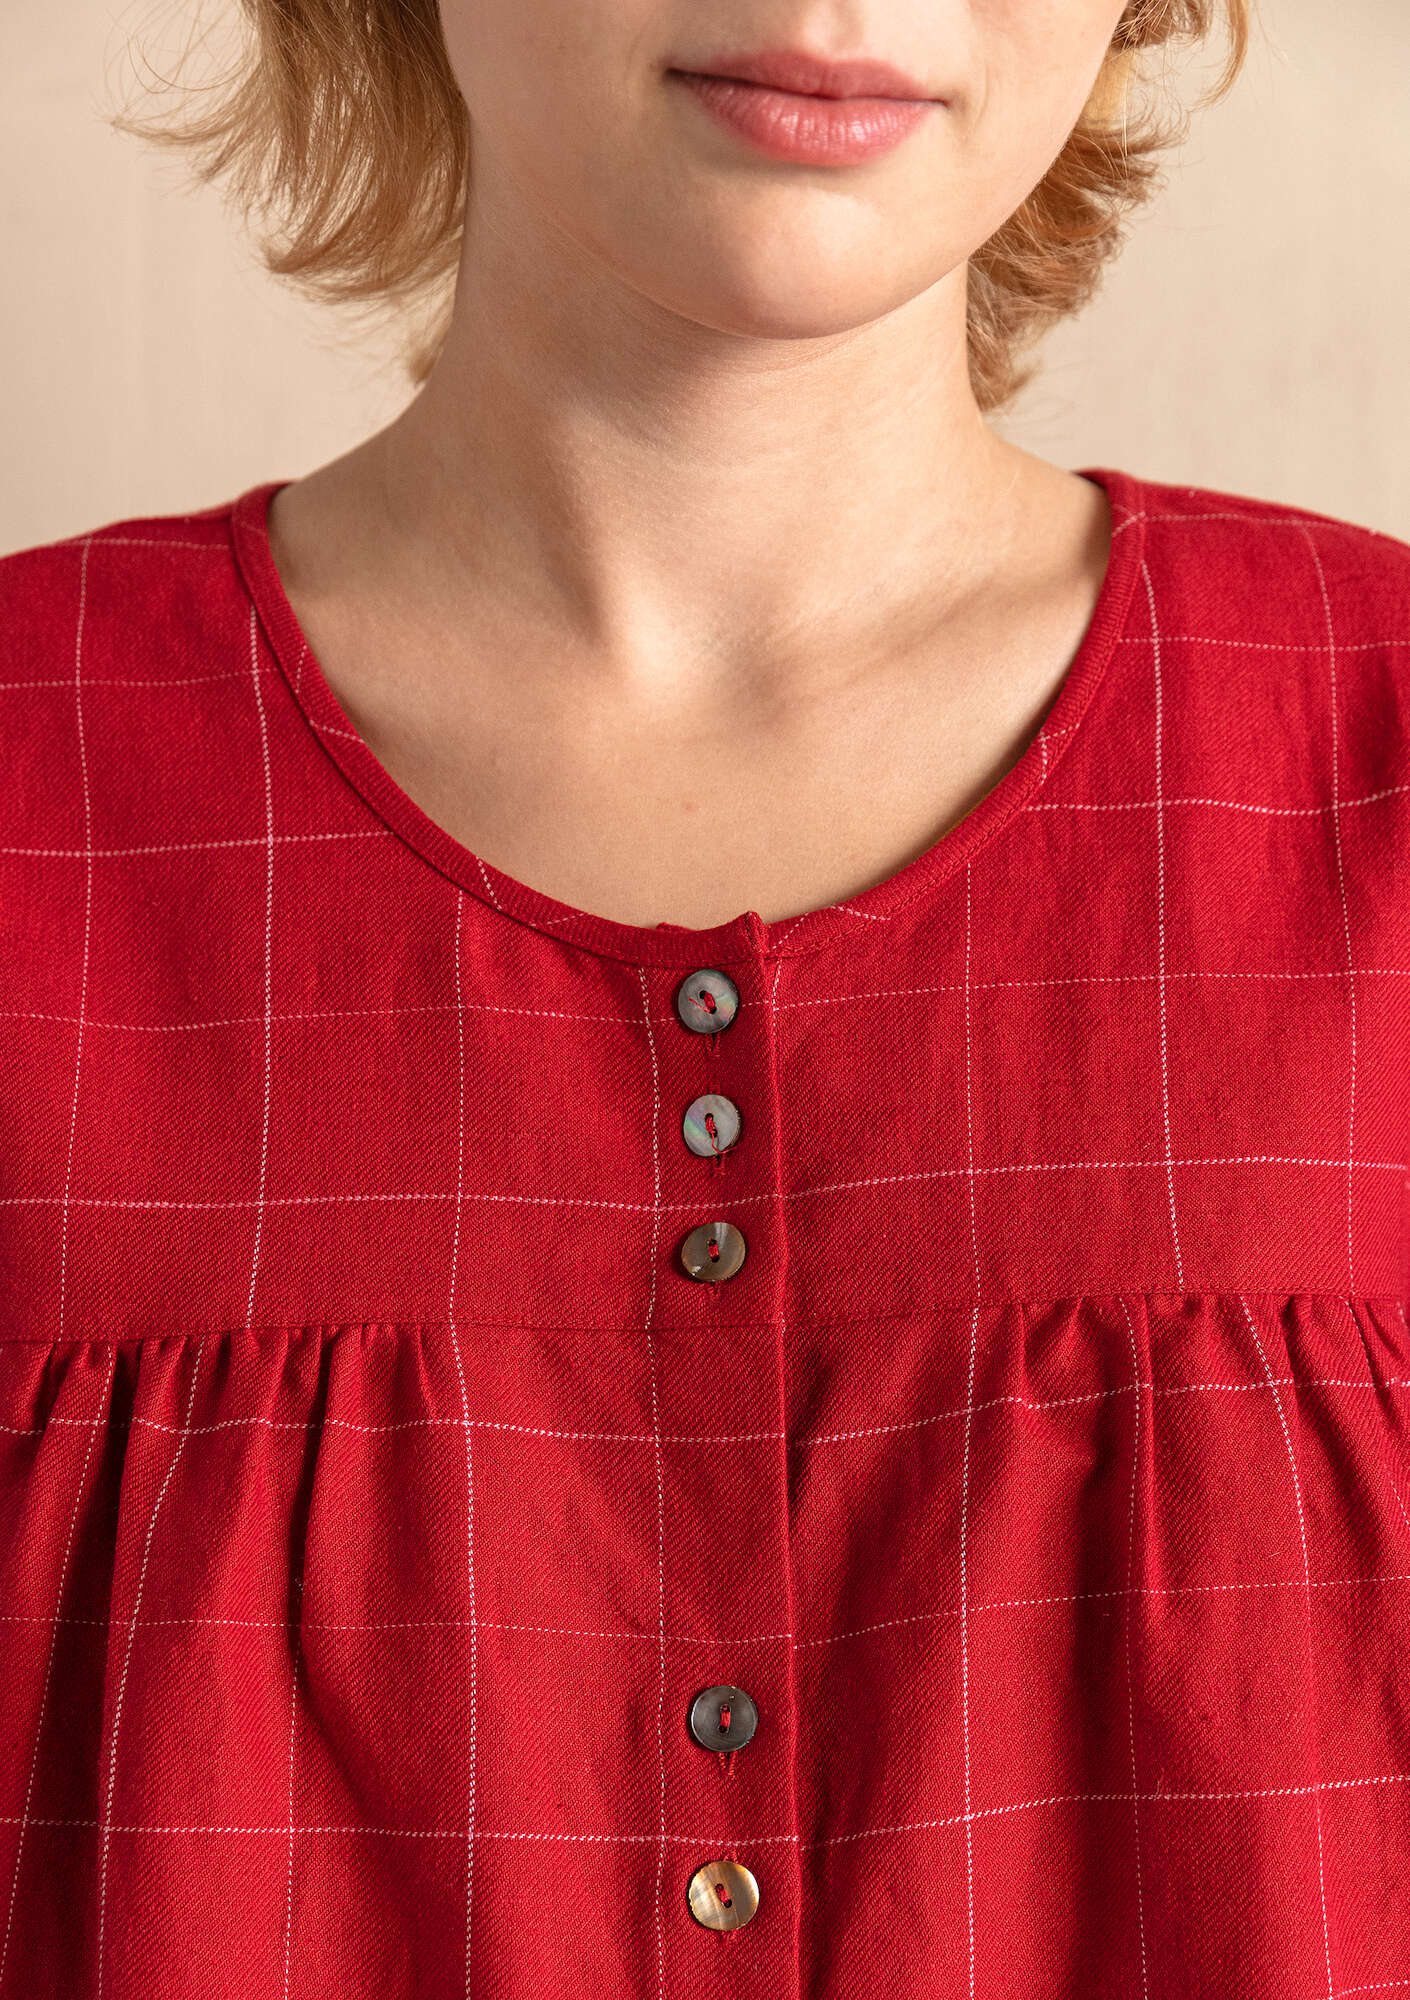 “Greta” woven artist’s blouse in organic cotton/linen poppy thumbnail